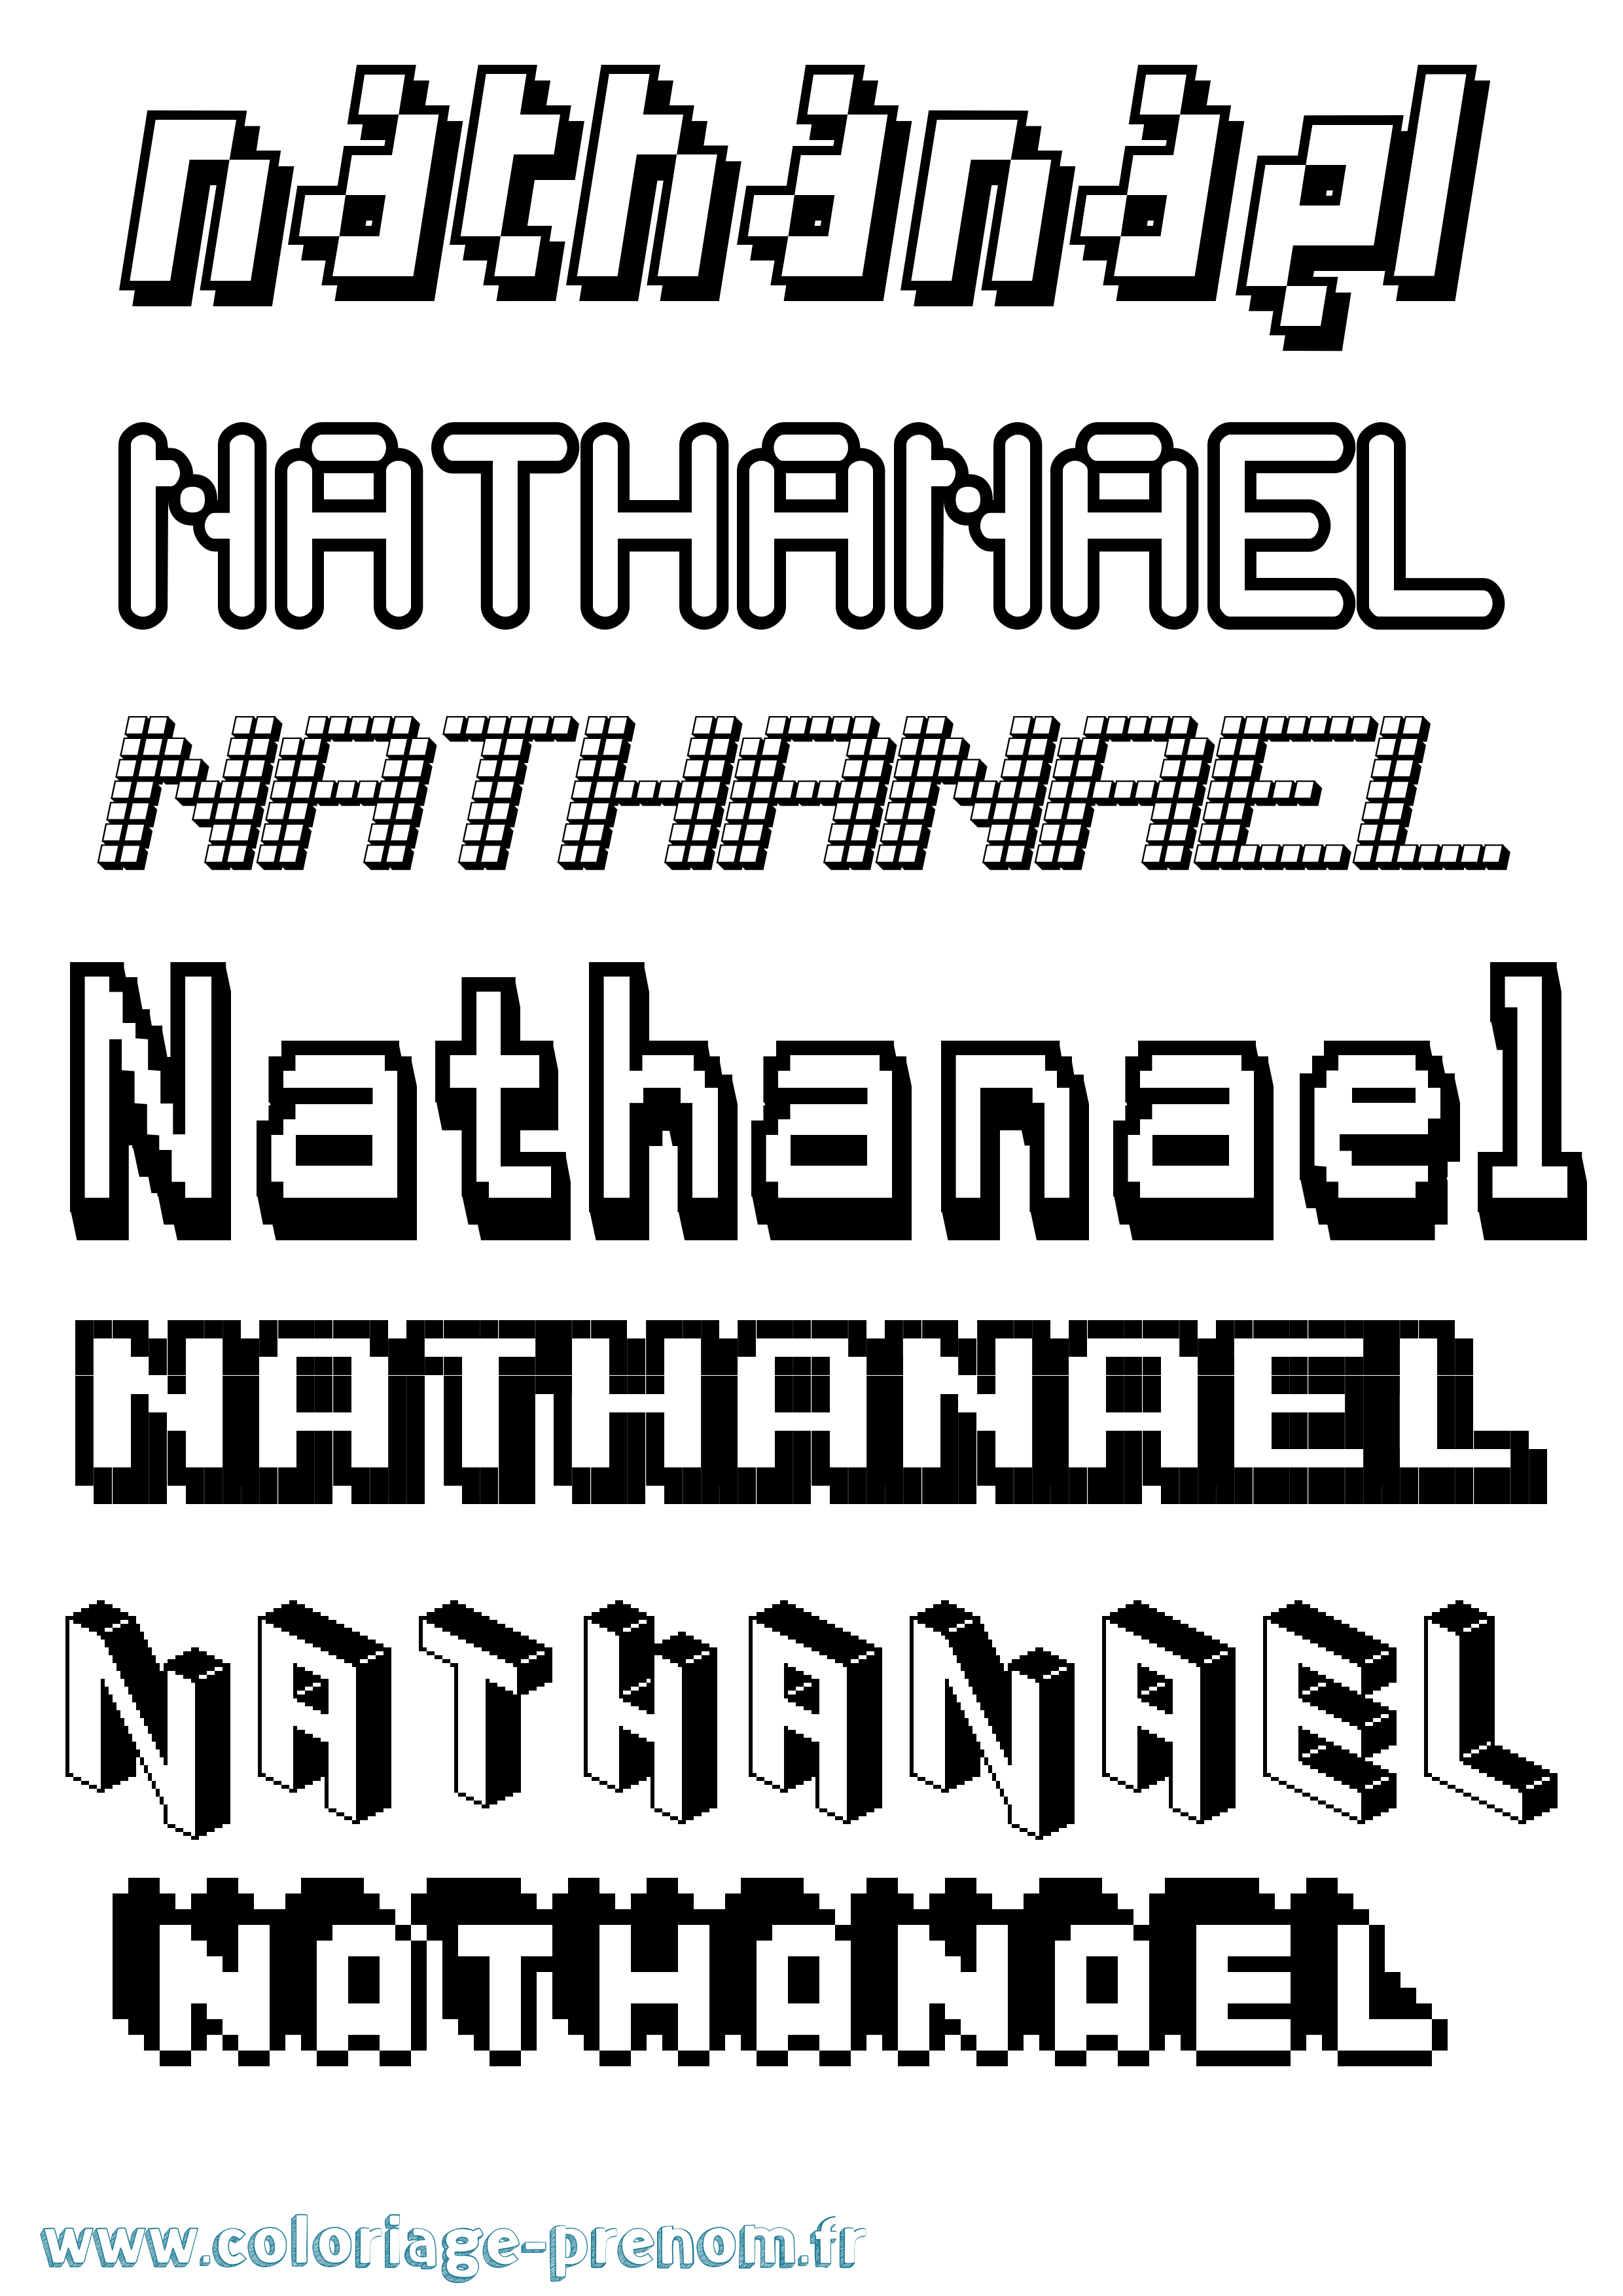 Coloriage prénom Nathanael